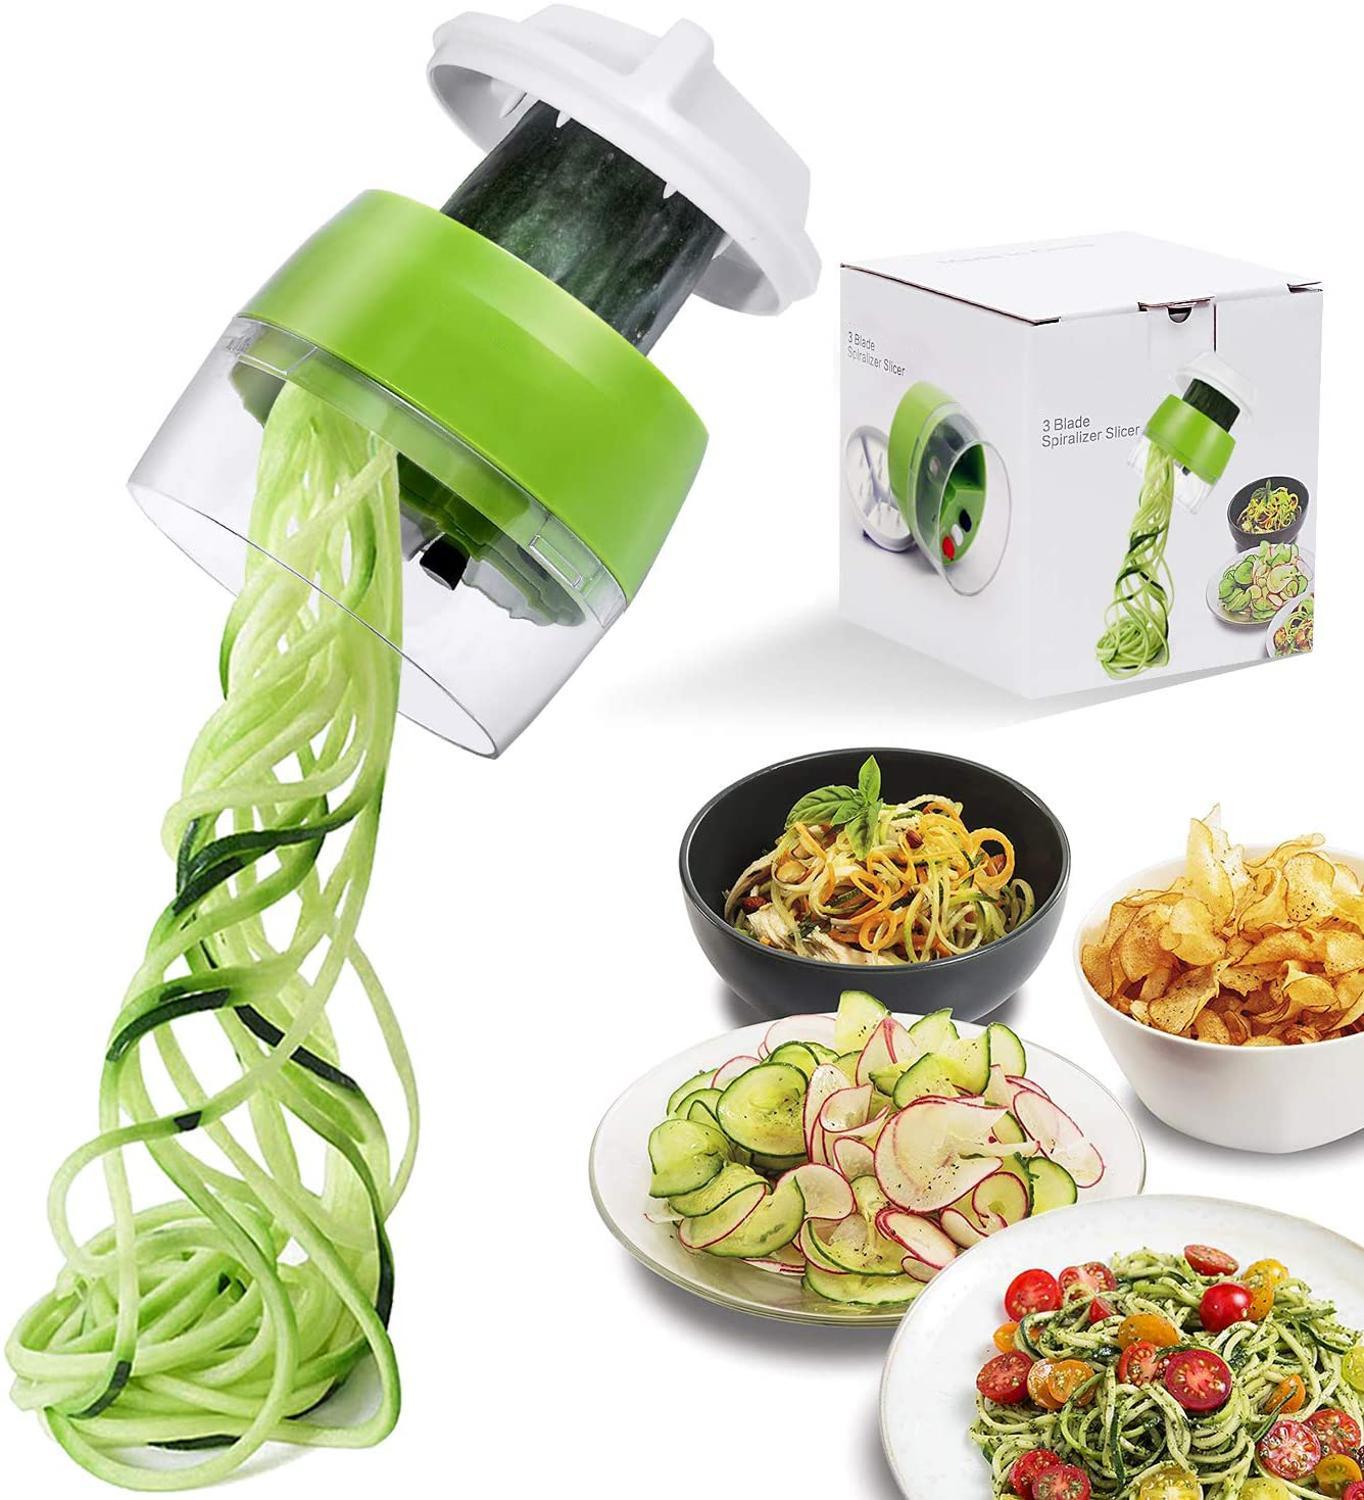 https://cdn.shopify.com/s/files/1/0303/2170/5093/files/Handheld-Spiralizer-Vegetable-Fruit-Slicer-4-in-1-Adjustable-Spiral-Grater-Cutter-Salad-Tools-Zucchini-Noodle.jpg?v=1625923456